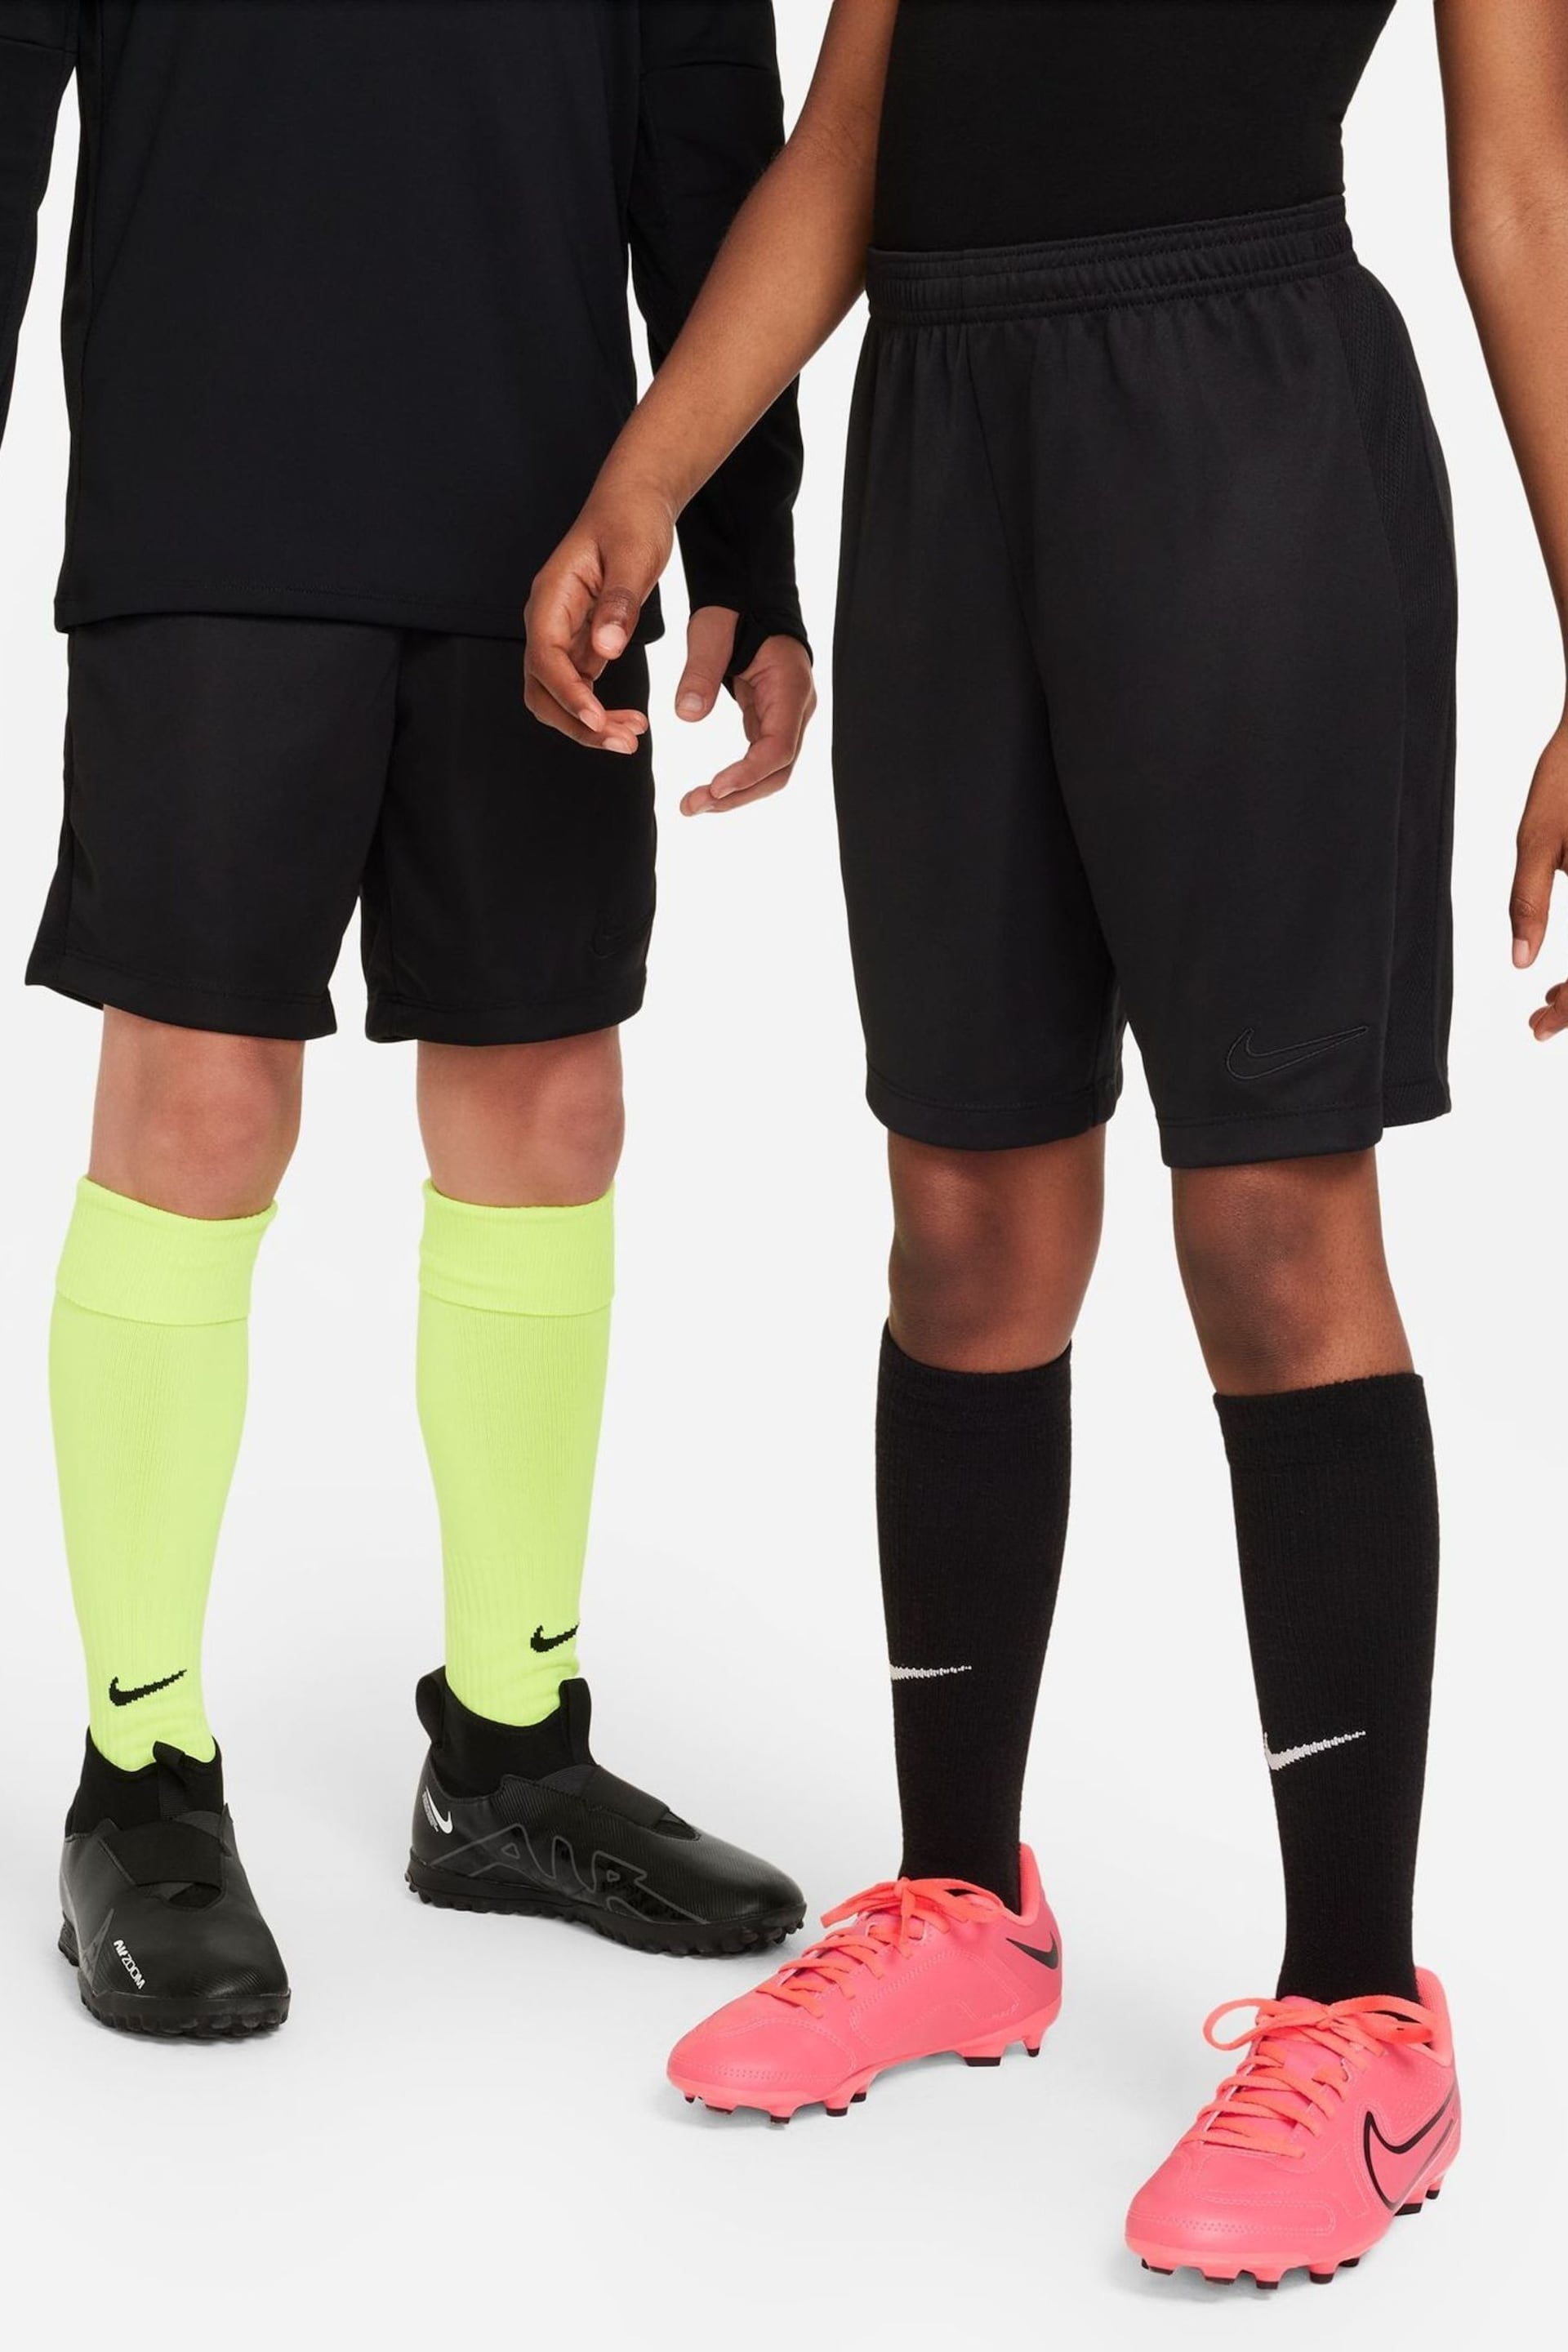 Nike Black Dri-FIT Academy Training Shorts - Image 3 of 9